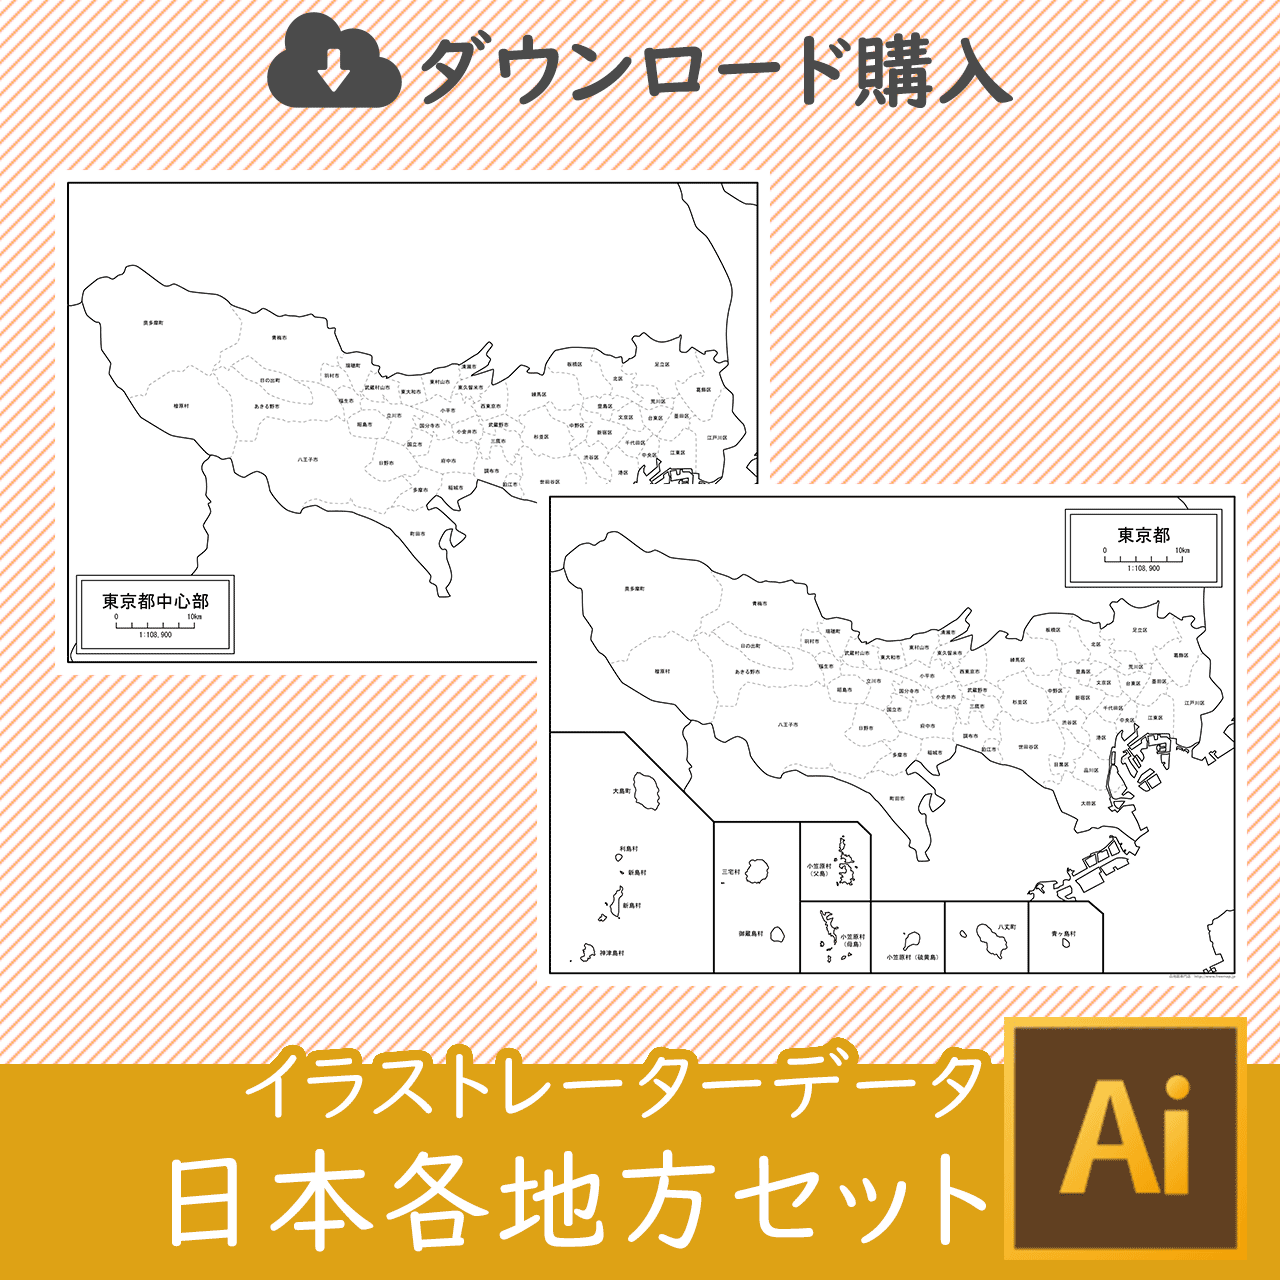 東京都中心部のaiデータのサムネイル画像